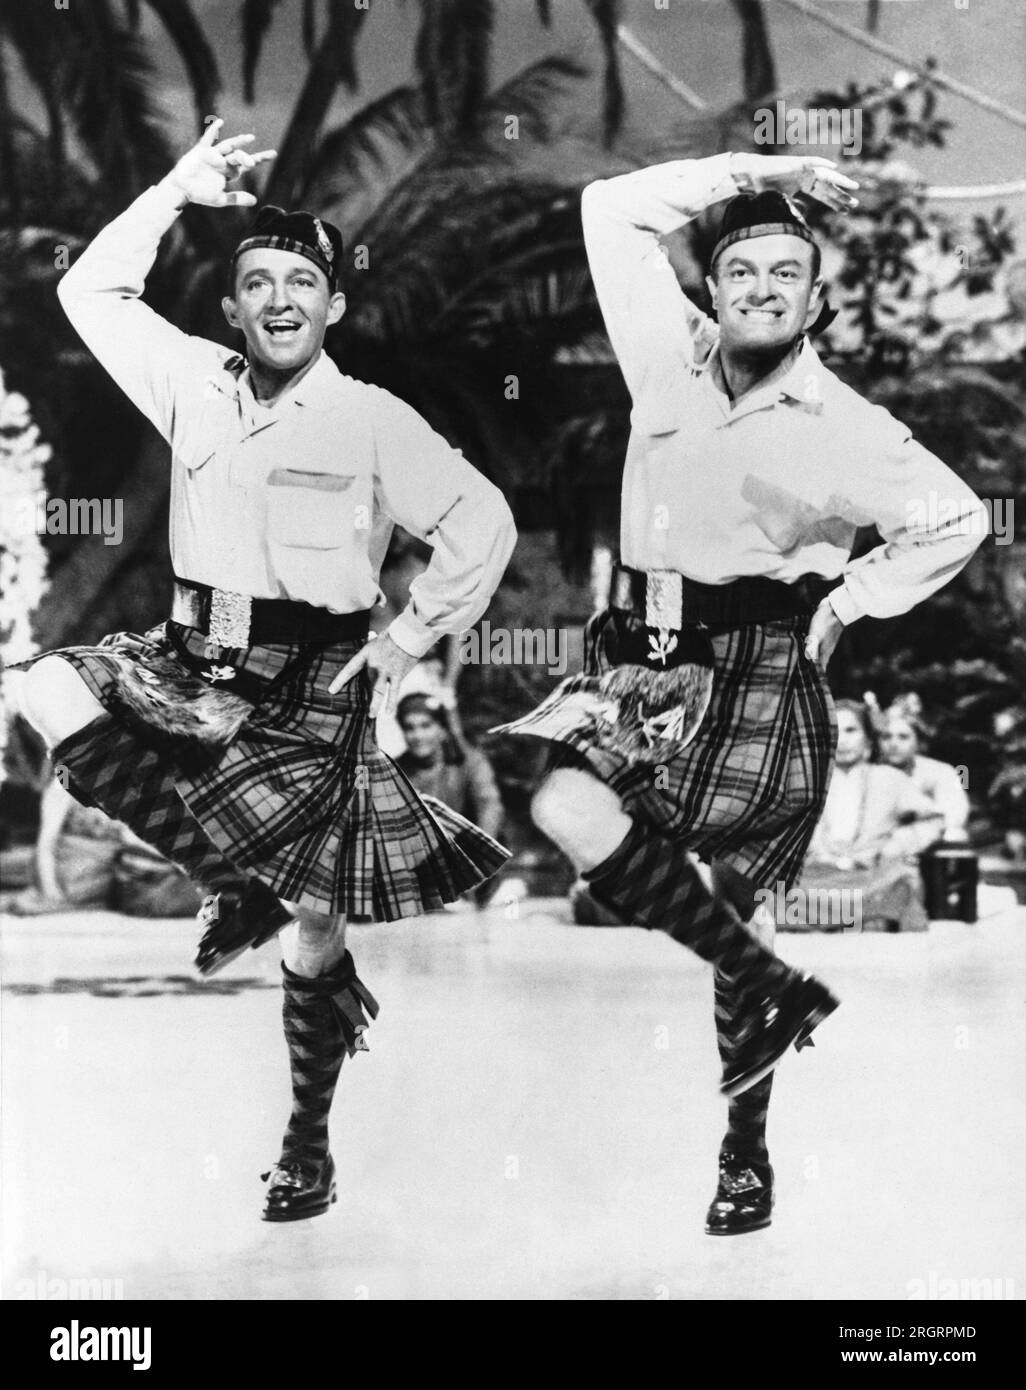 Hollywood, Californie : 2 septembre 1952 les acteurs Bing Crosby et Bob Hope dansent en kilts dans une scène de leur dernier film, 'Road to Bali'. Banque D'Images